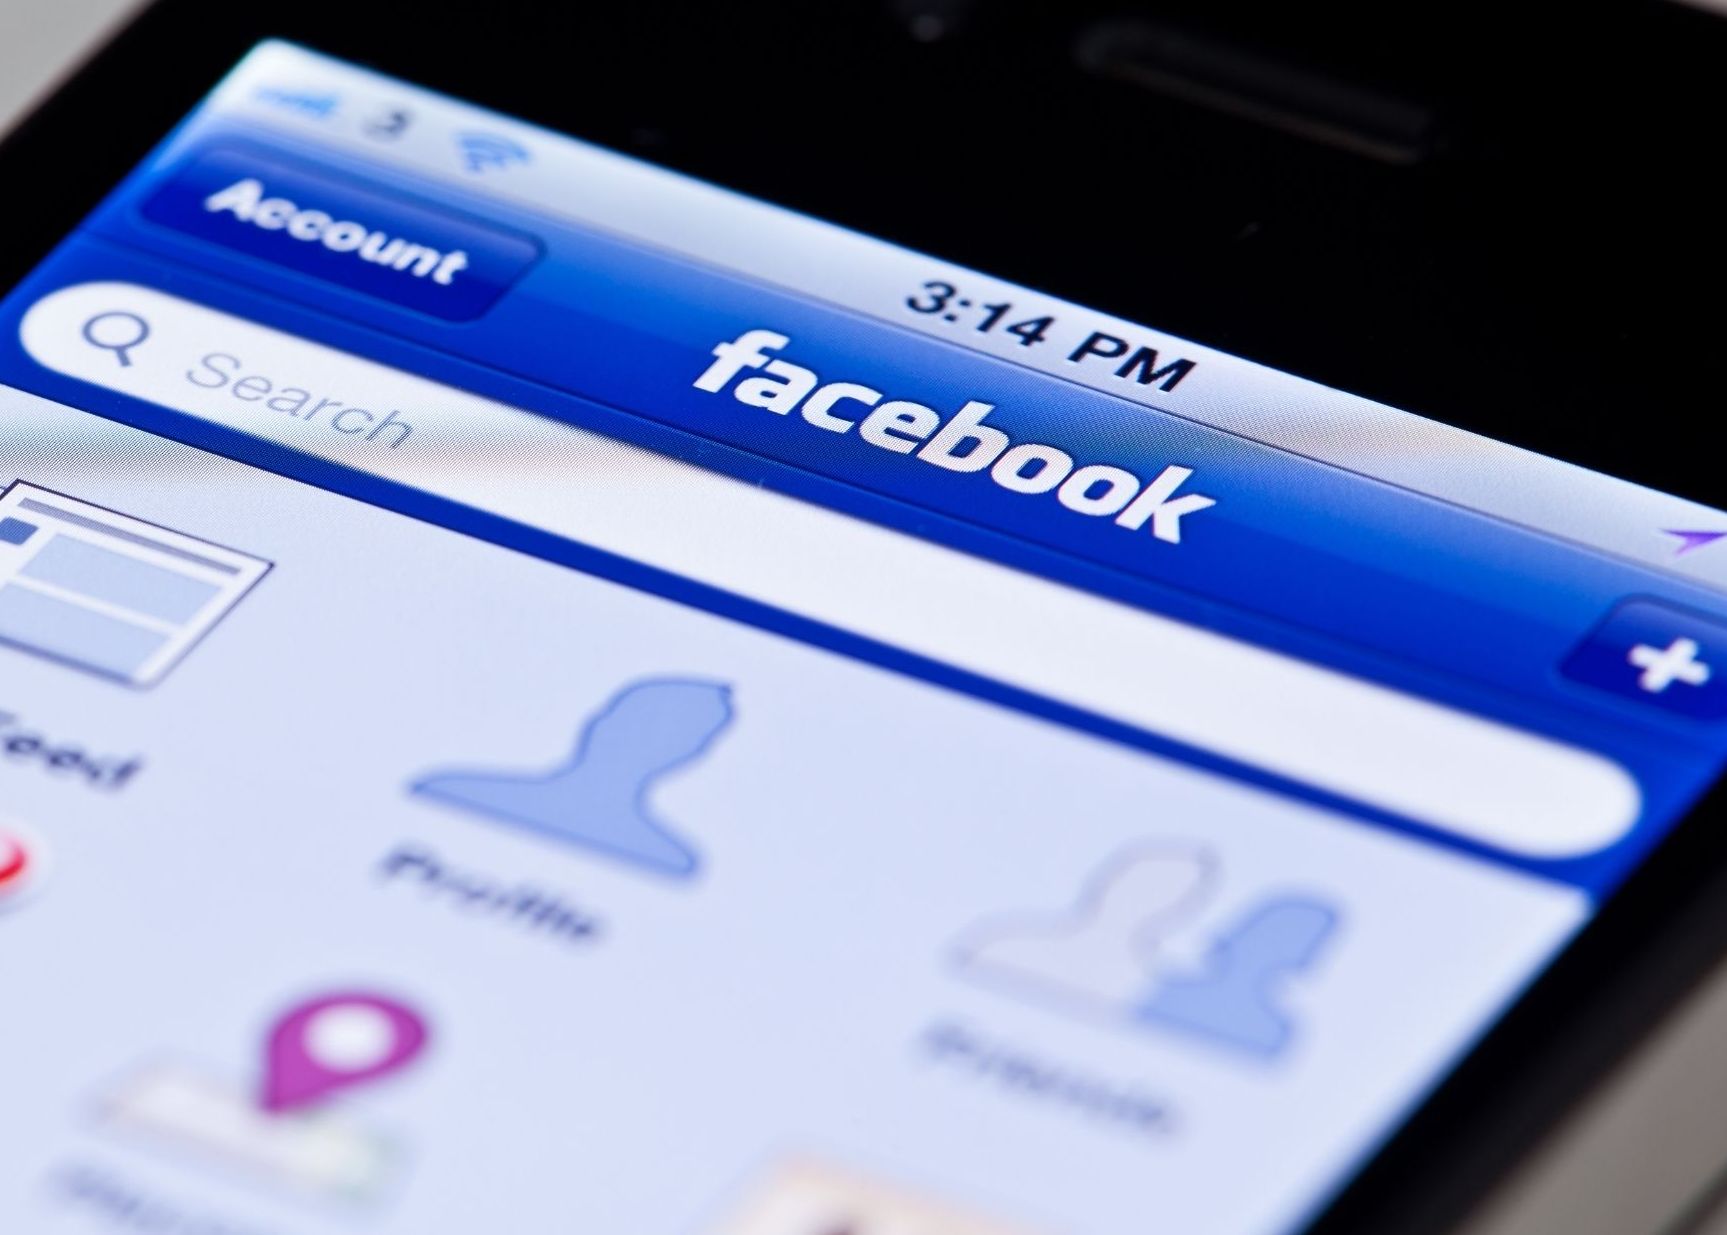 Rewolucja w internecie. Facebook planuje zmienić nazwę - Zdjęcie główne